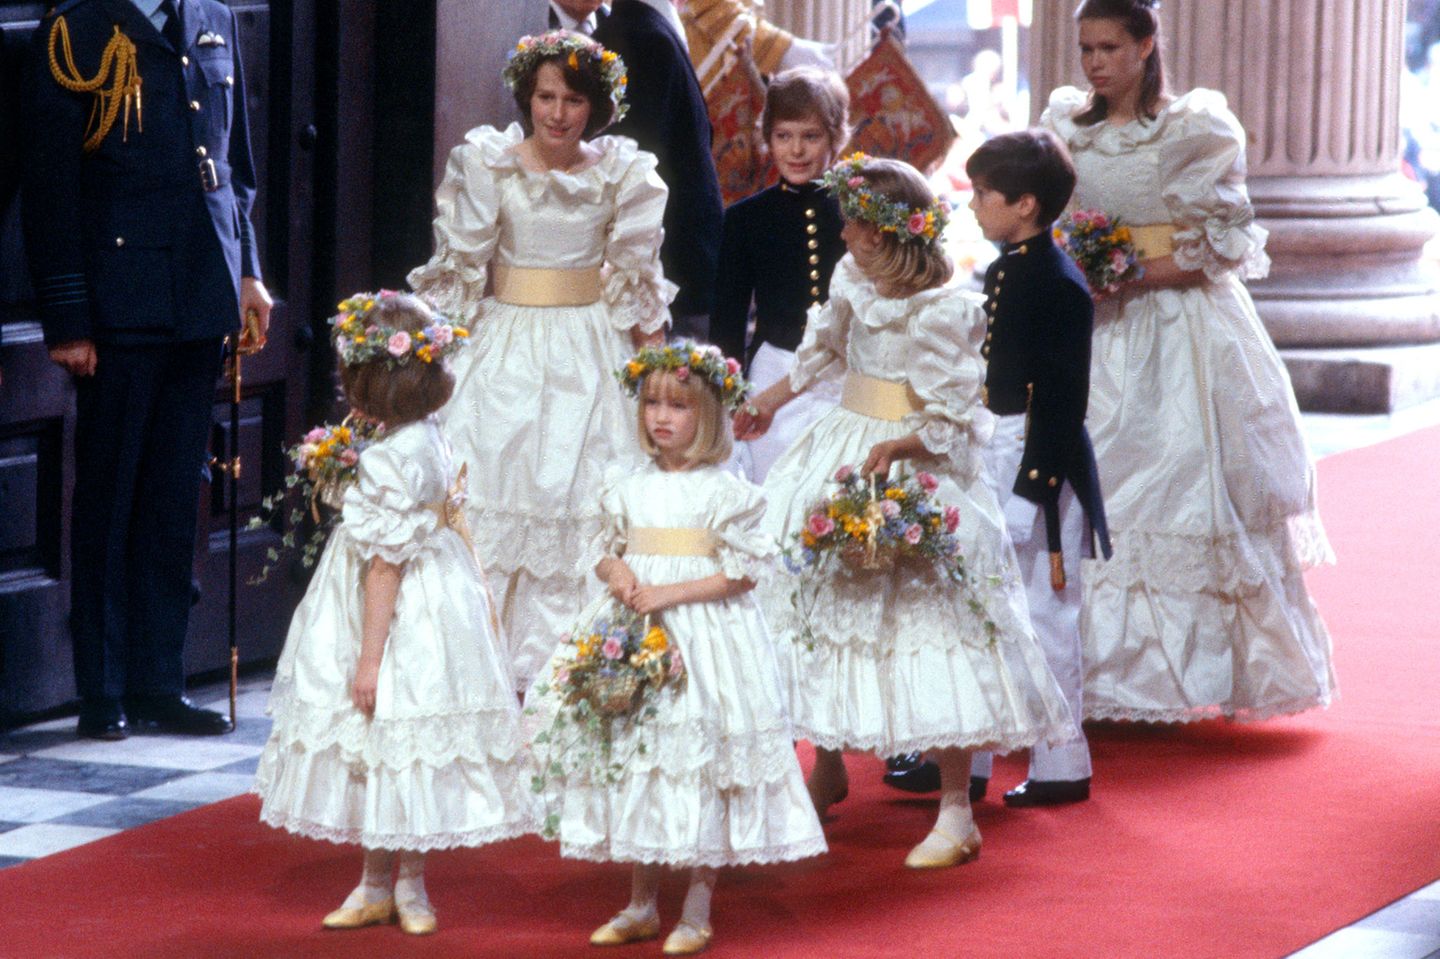 Die Brautjungfern von Prinzessin Diana auf dem roten Teppich der Kirche.